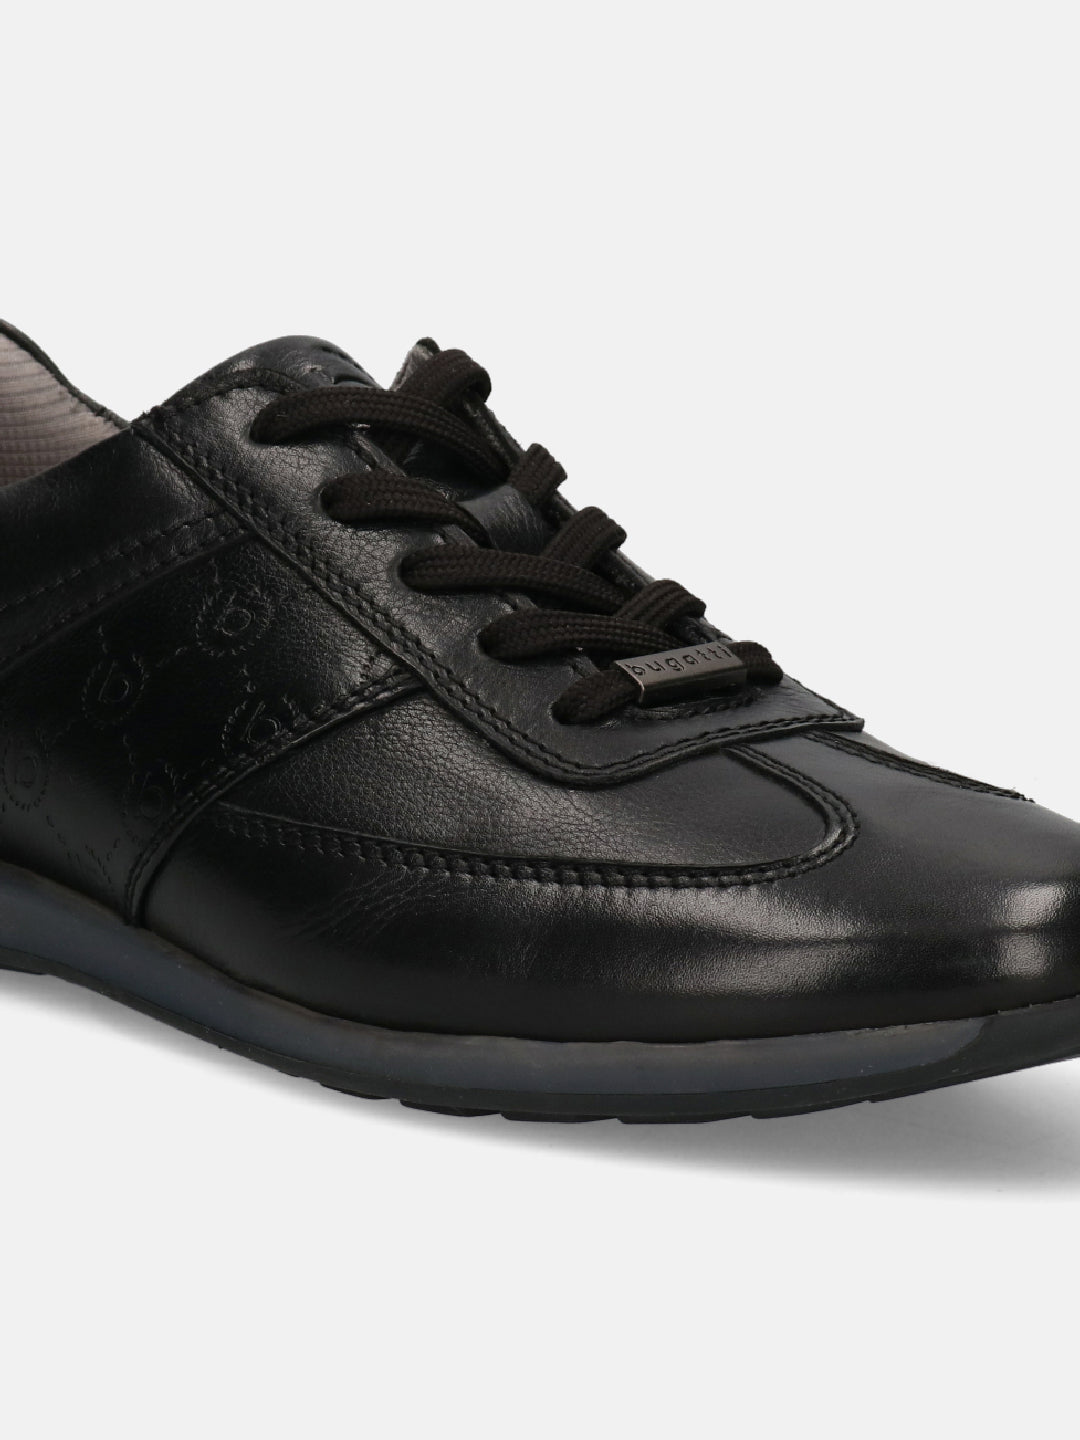 Alexander Mcqueen Men's Black Rhinestone Embellished Low Top Court Sneakers,  Brand Size 40 ( US Size 7 ) 705119 WHCET 1000 - Shoes, Alexander McQueen -  Jomashop